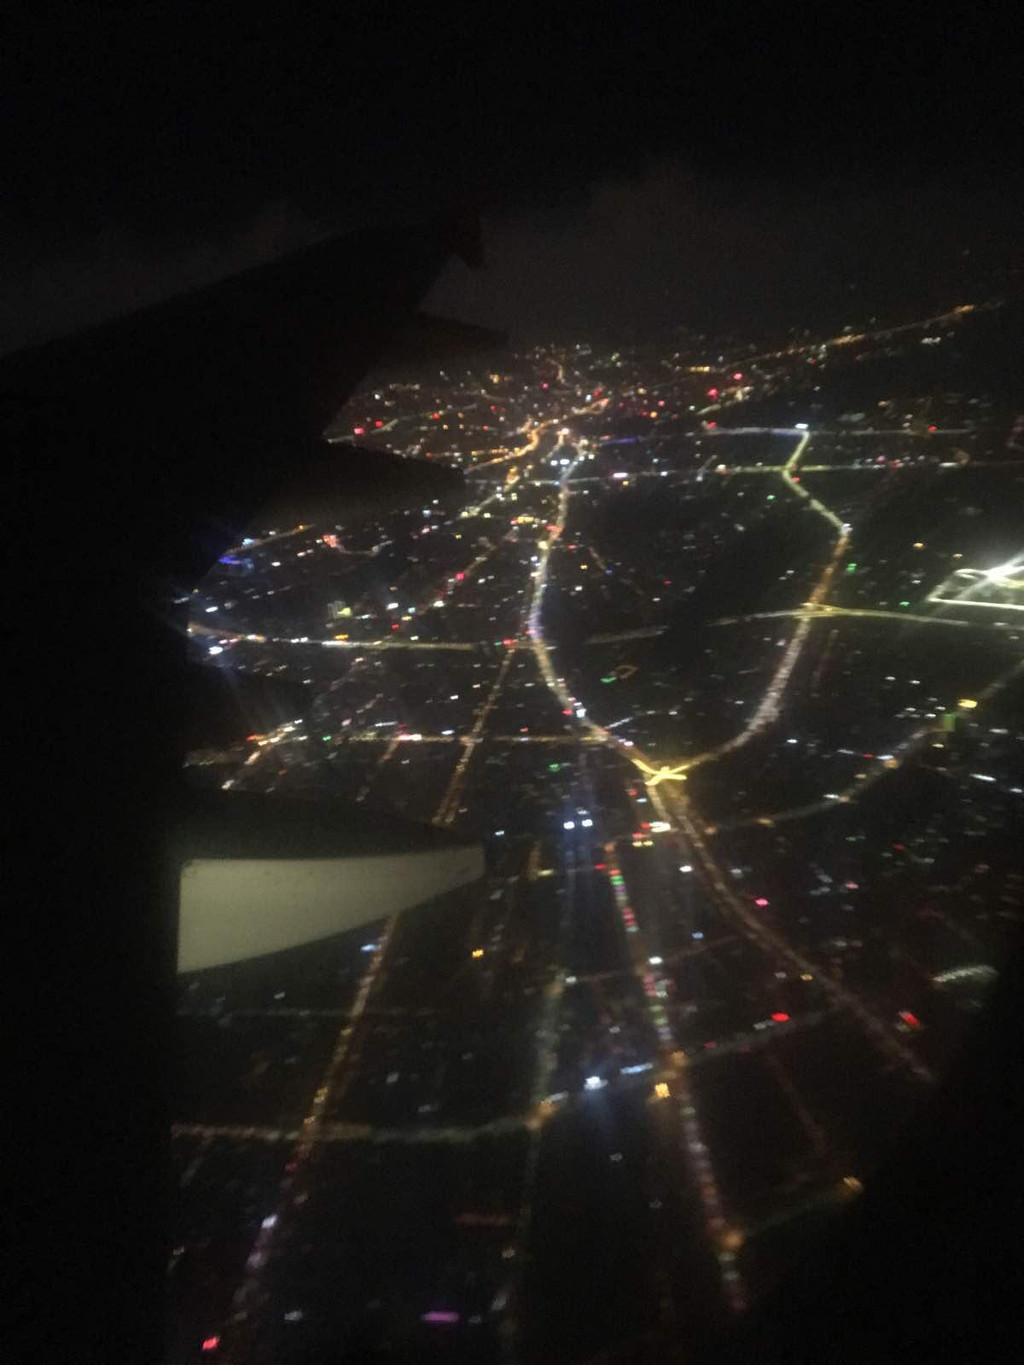 乌鲁木齐飞机场夜景图片